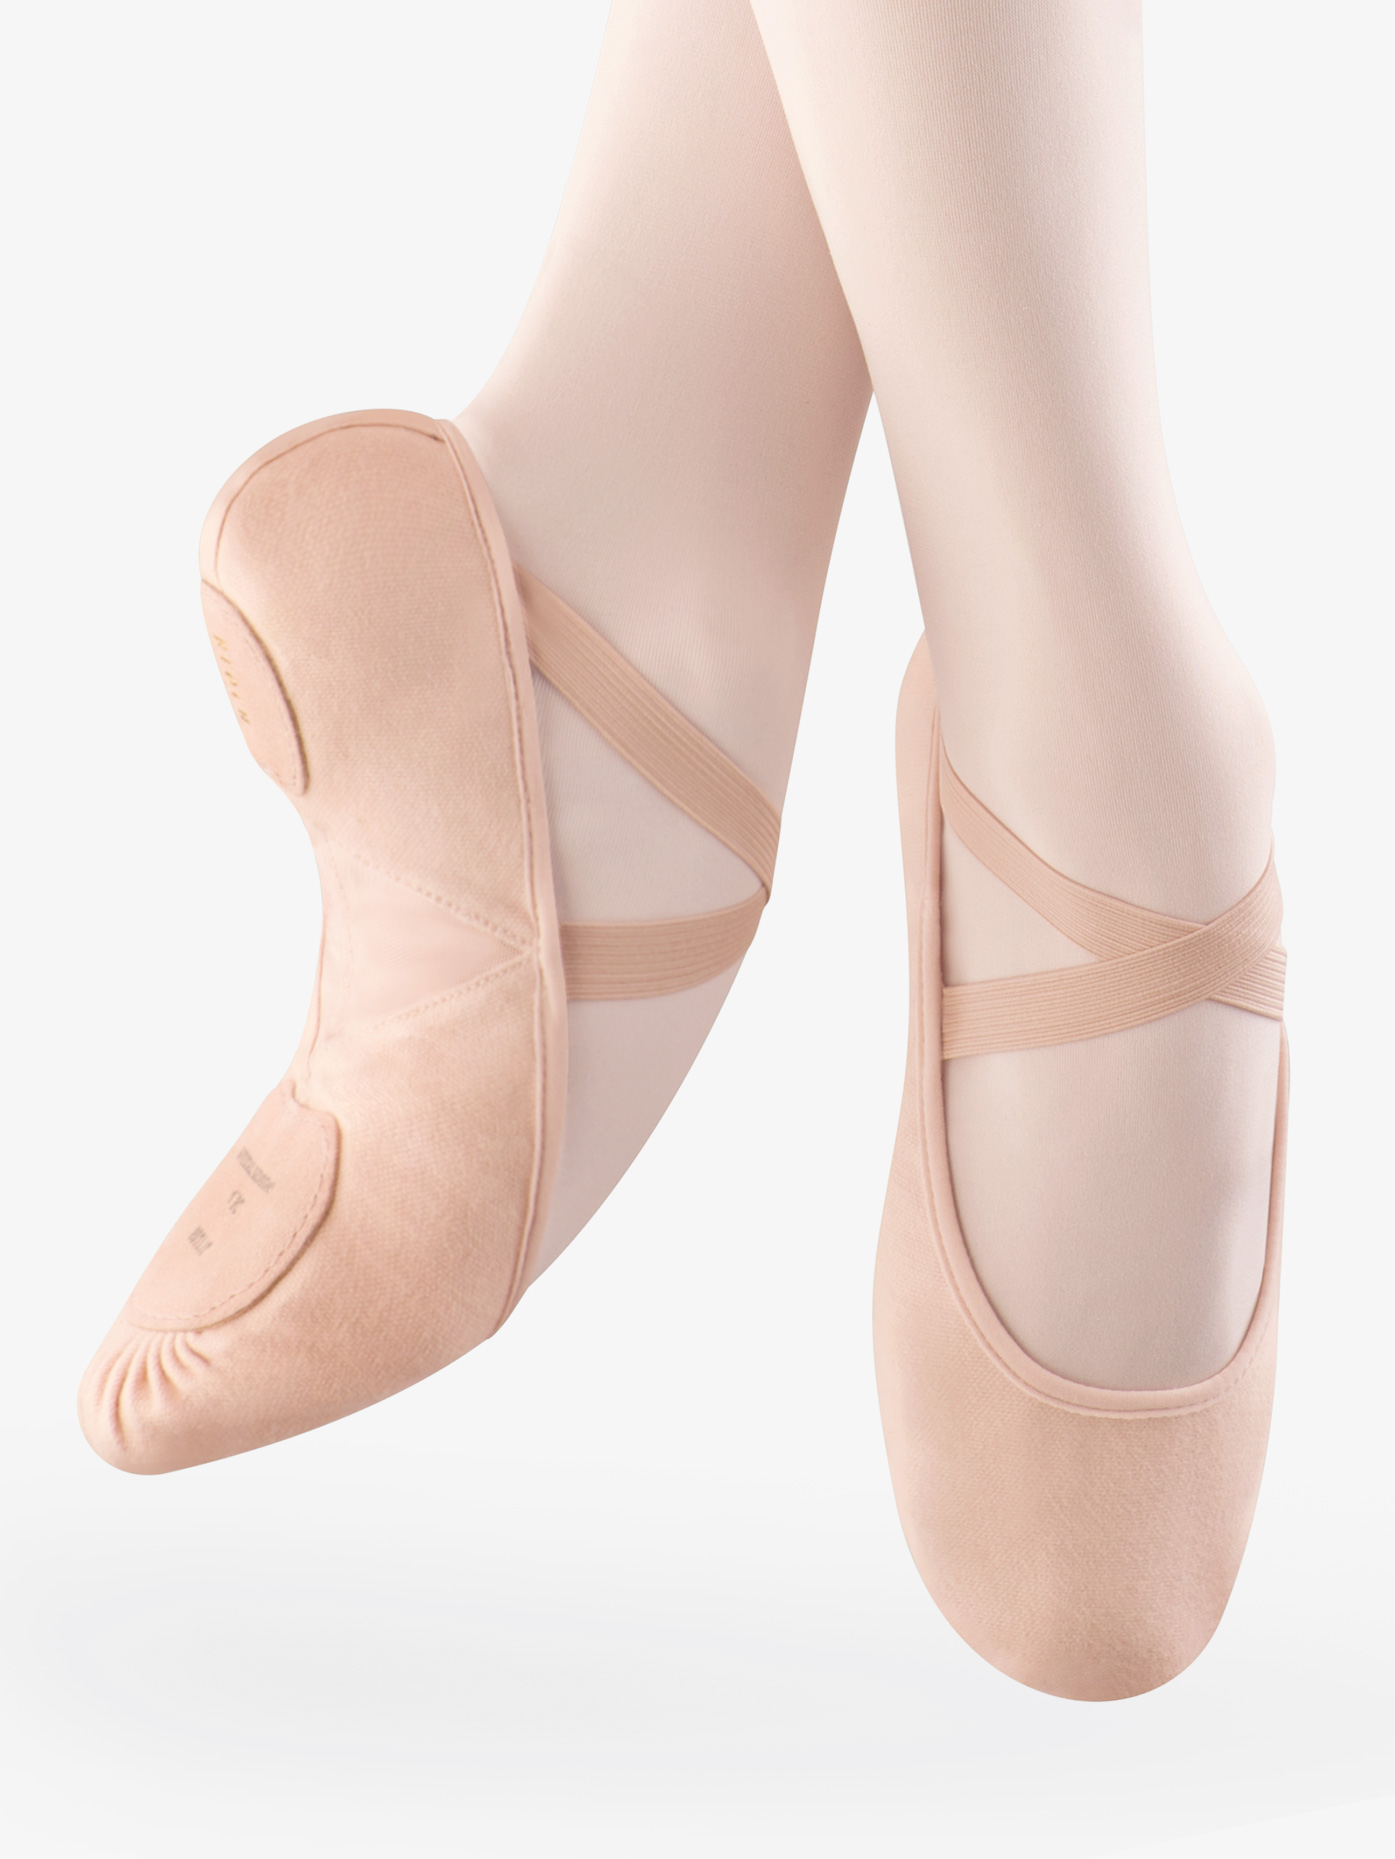 white canvas split sole ballet shoes